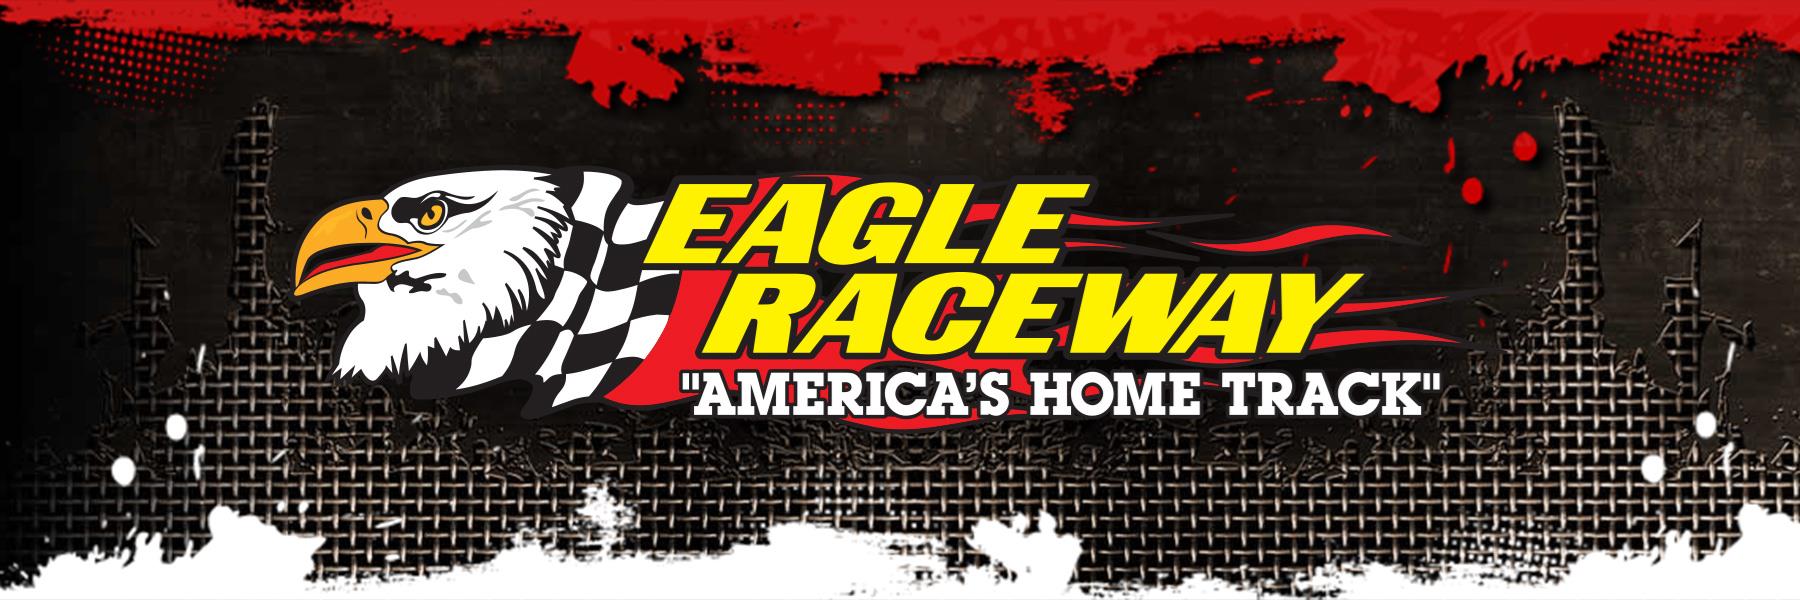 7/13/2013 - Eagle Raceway